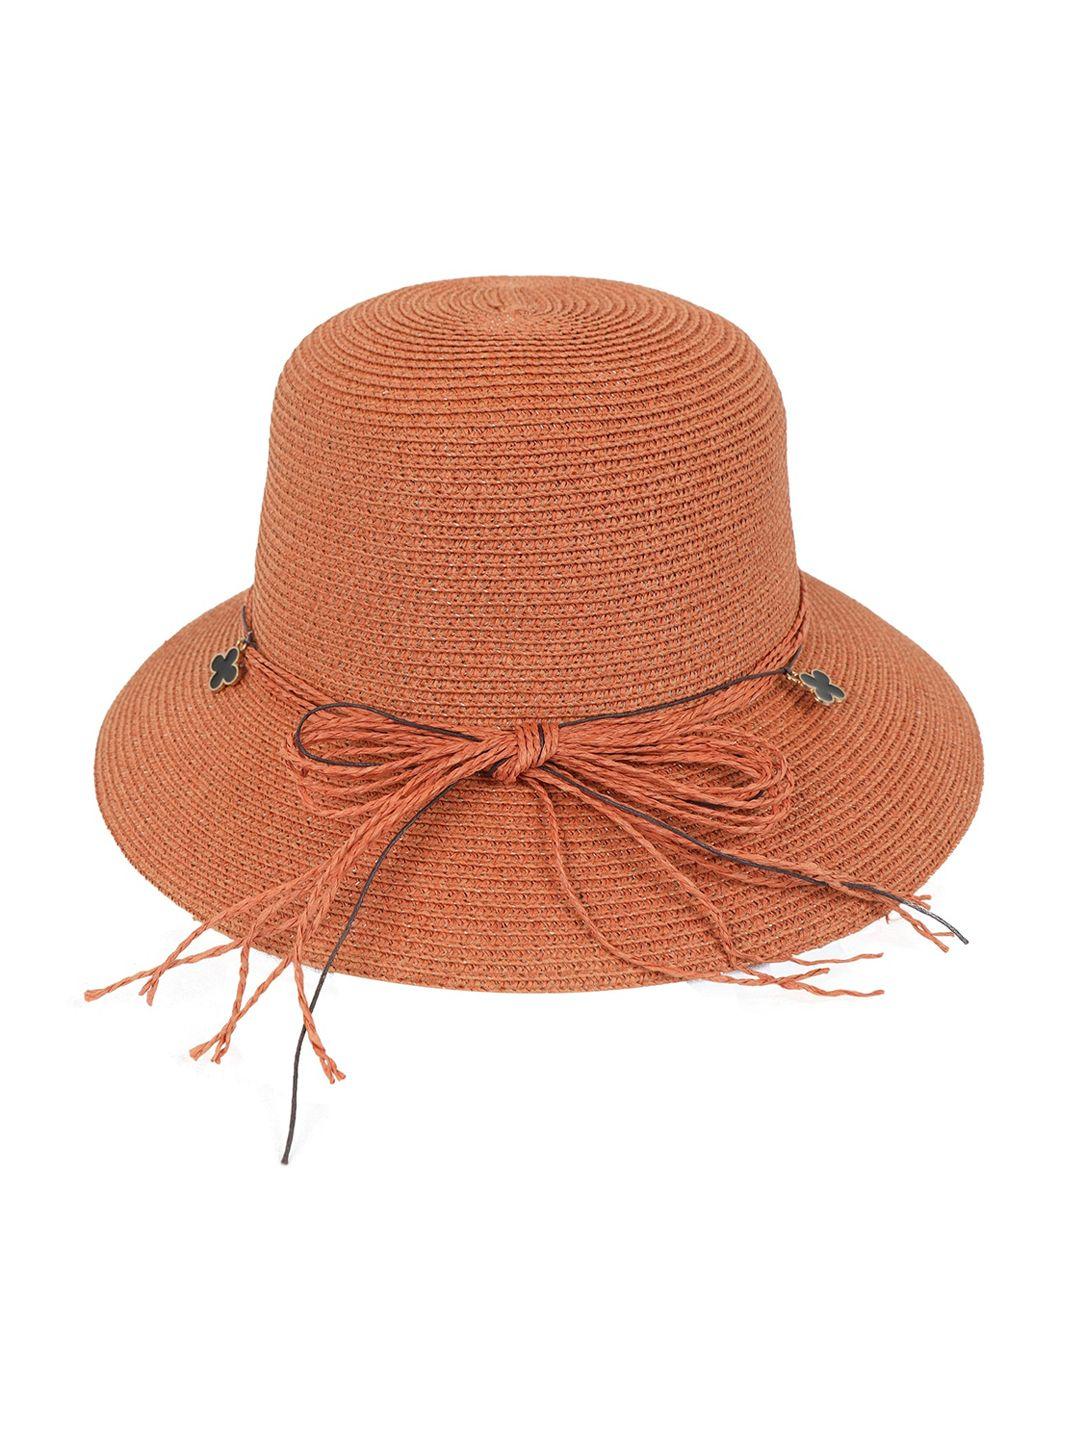 fabseasons self-design lightweight sun hat